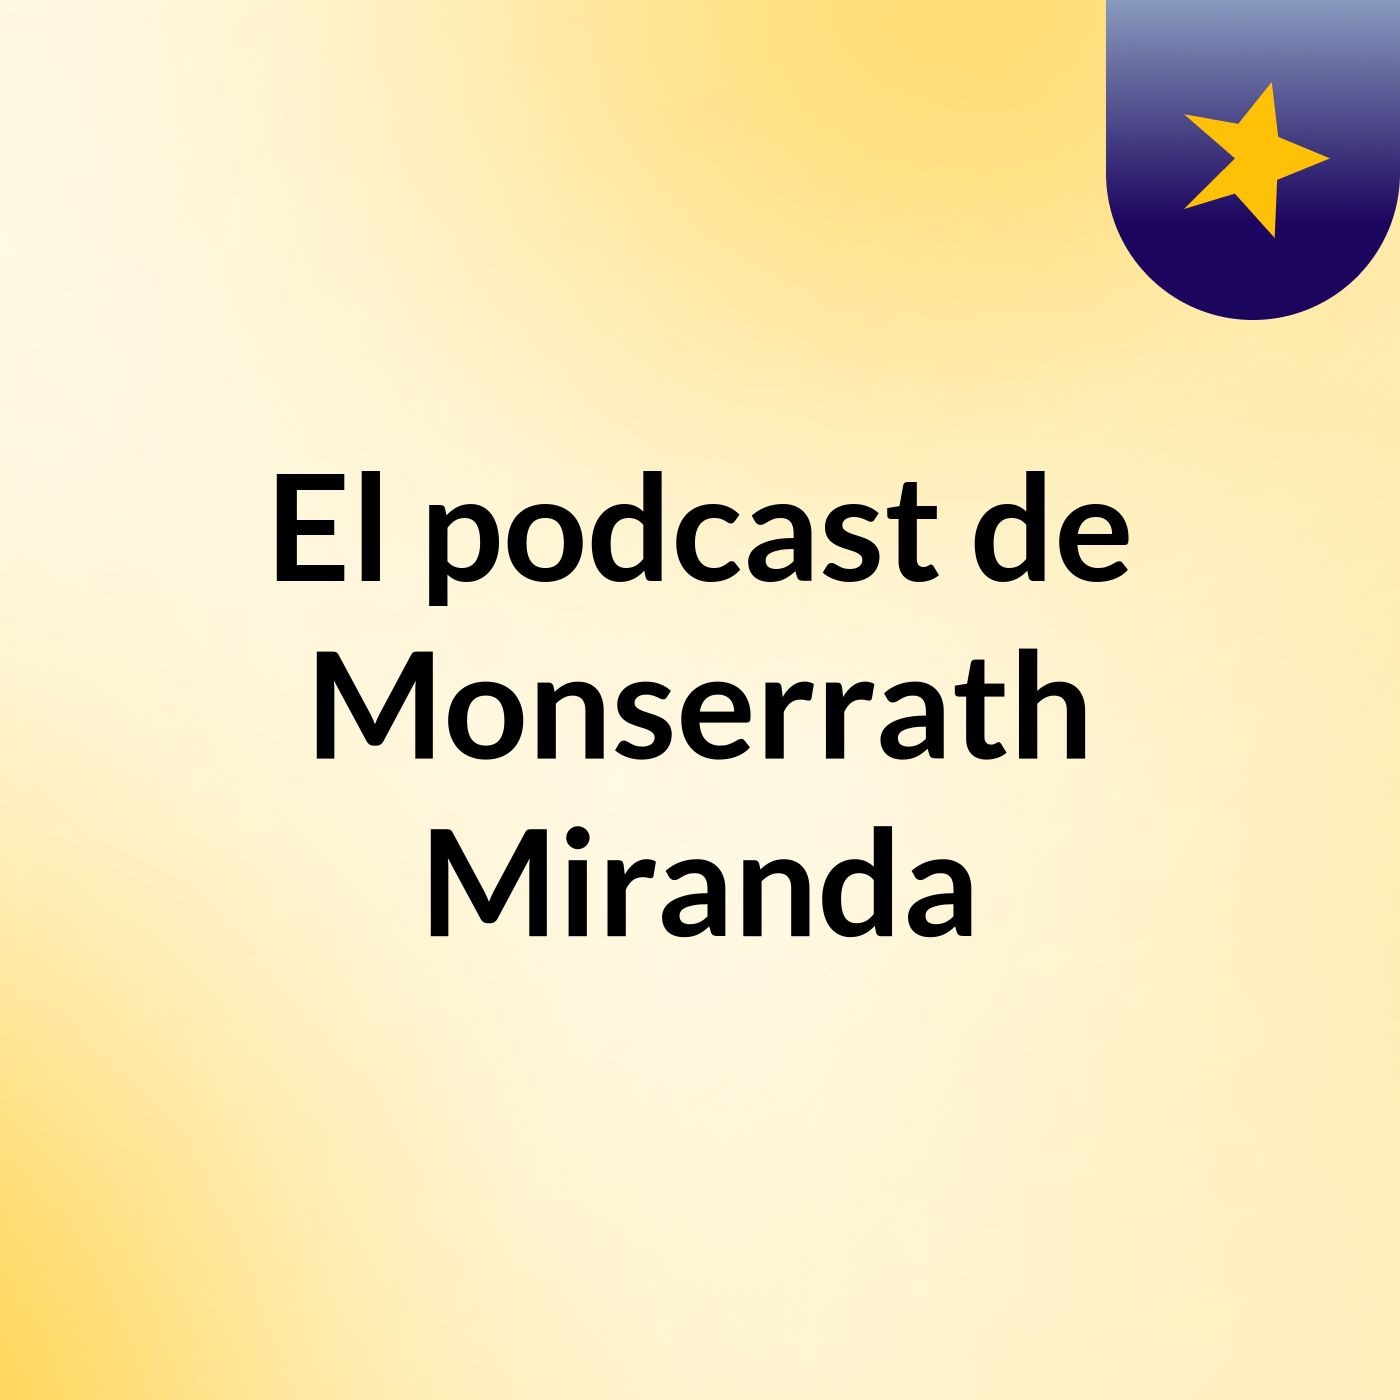 El podcast de Monserrath Miranda